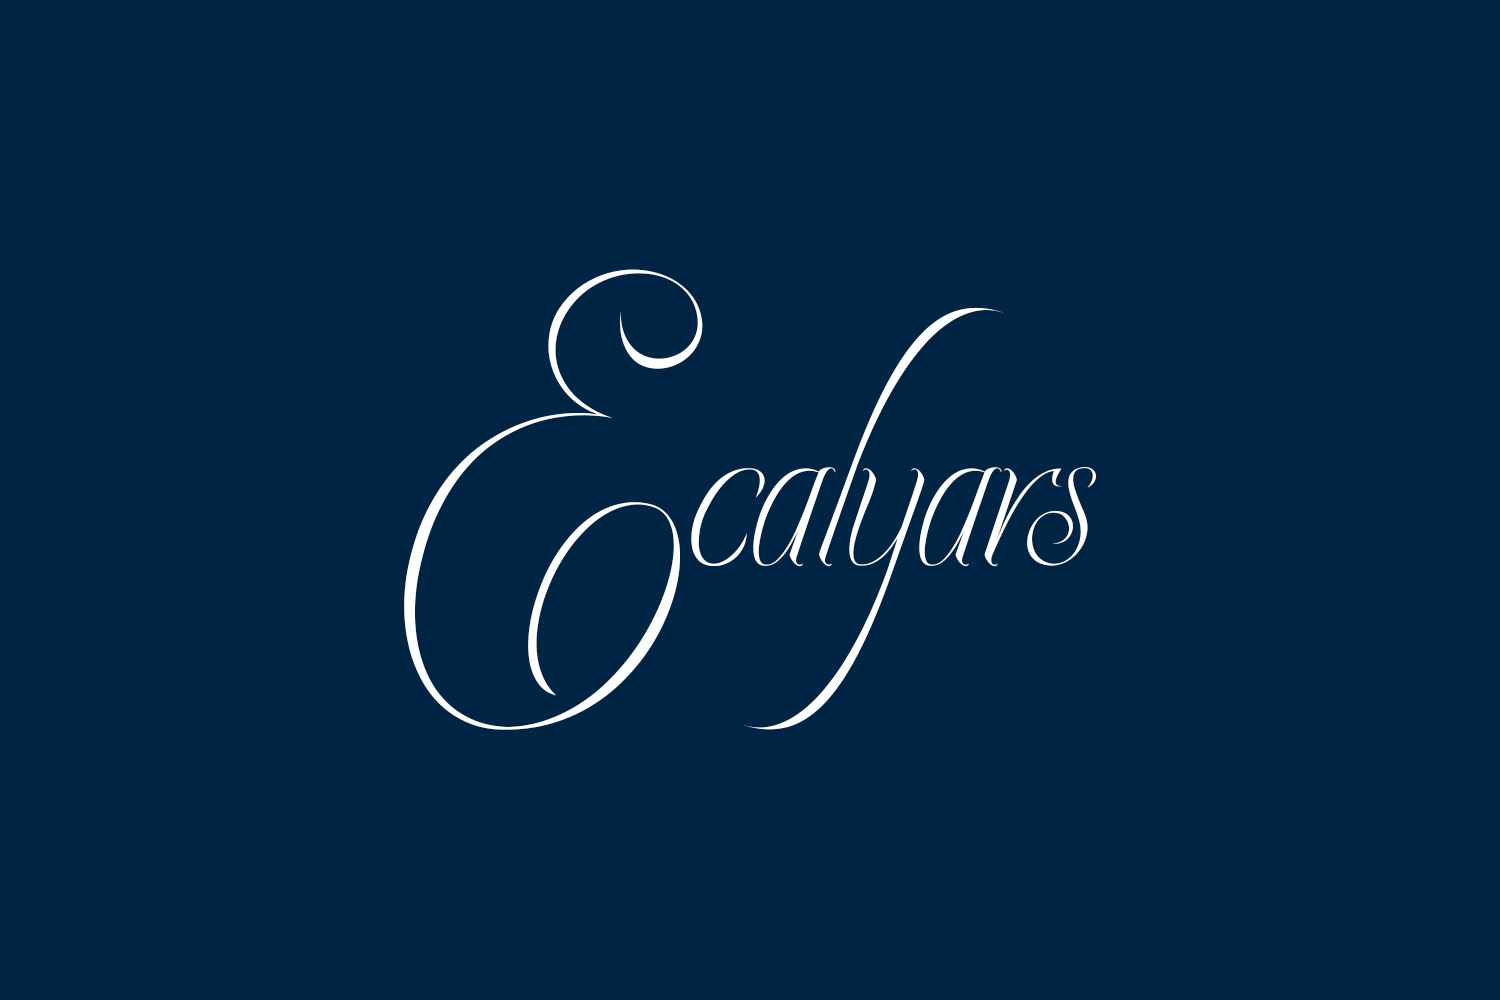 Ecalyars Free Font